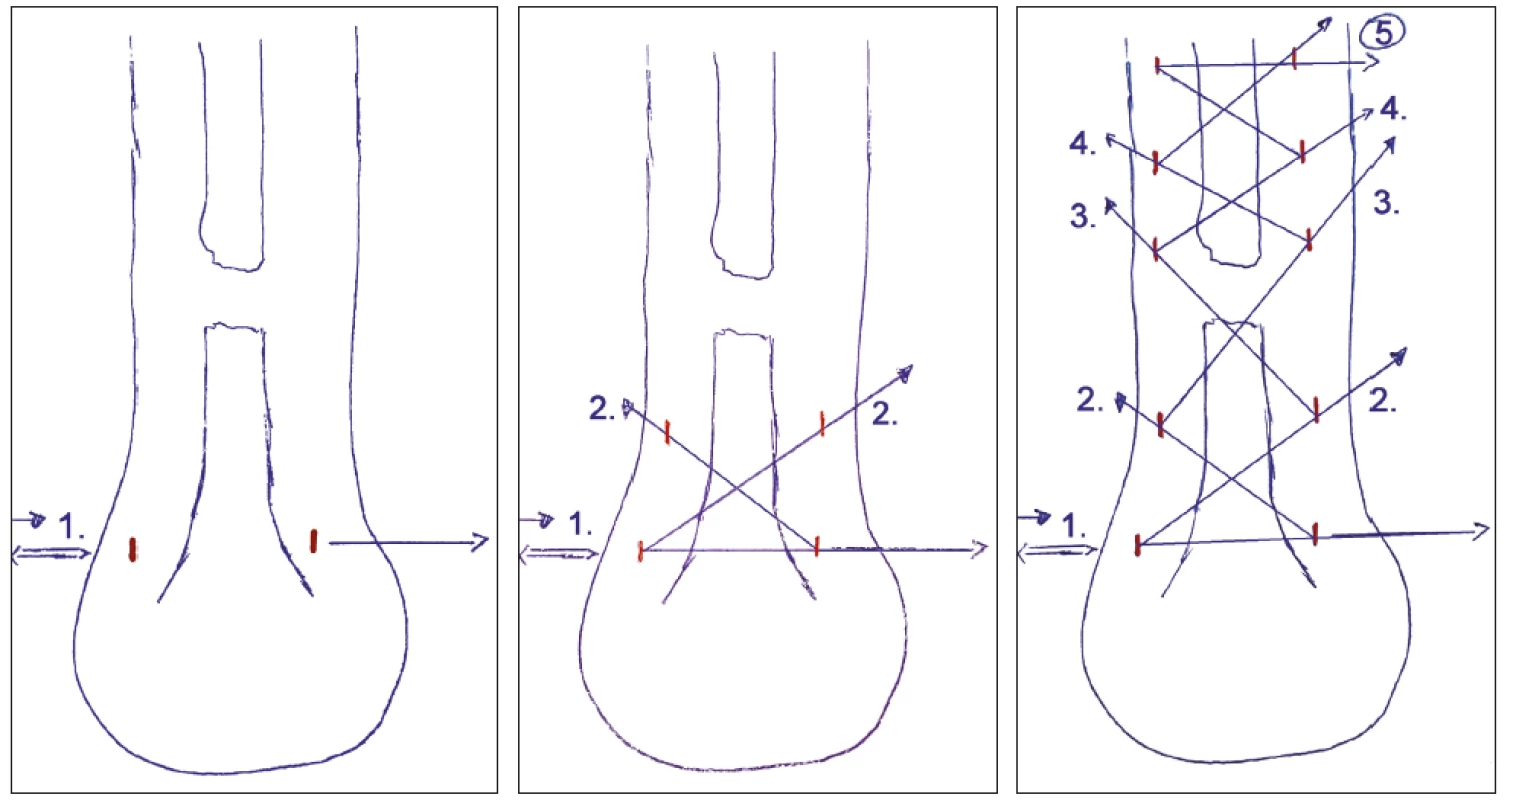 Perkutánní technika – a) - zavedení drátu s vlákny do distálního pahýlu šlachy, b) „zig-zag“ metoda zakládání vláken, c) konečný stav